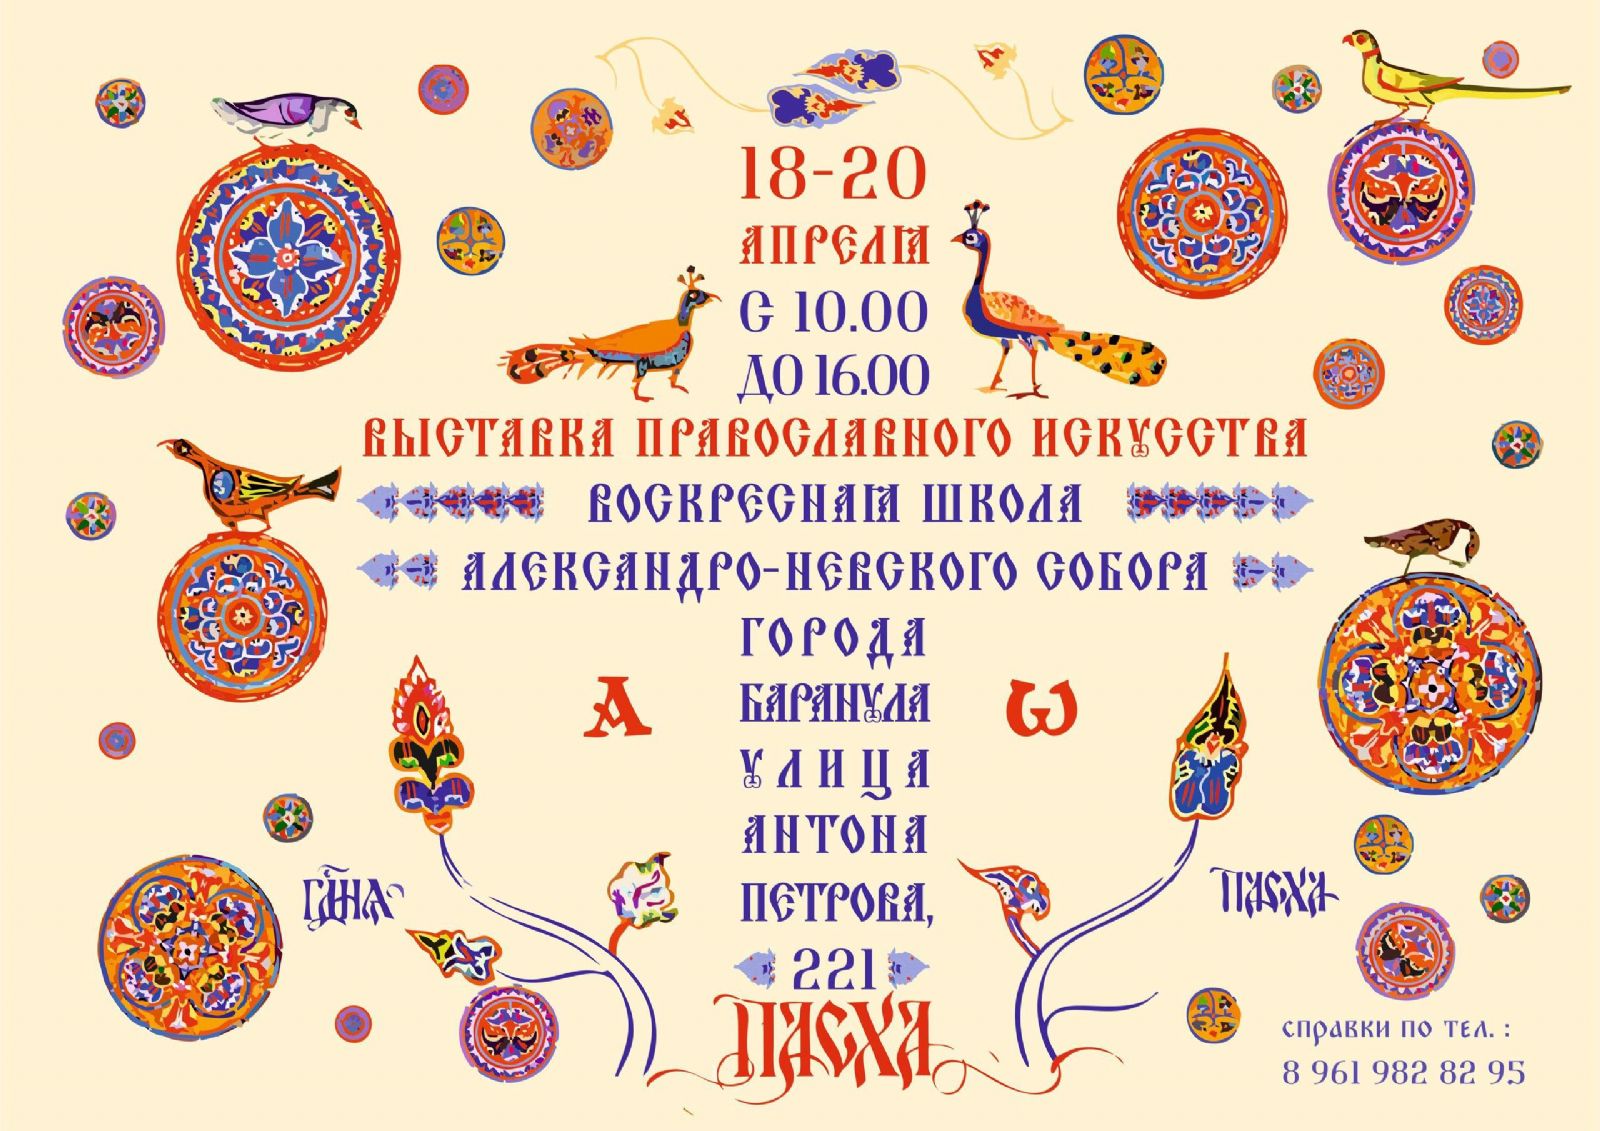 18-20 апреля приглашаем на выставку православного искусства!